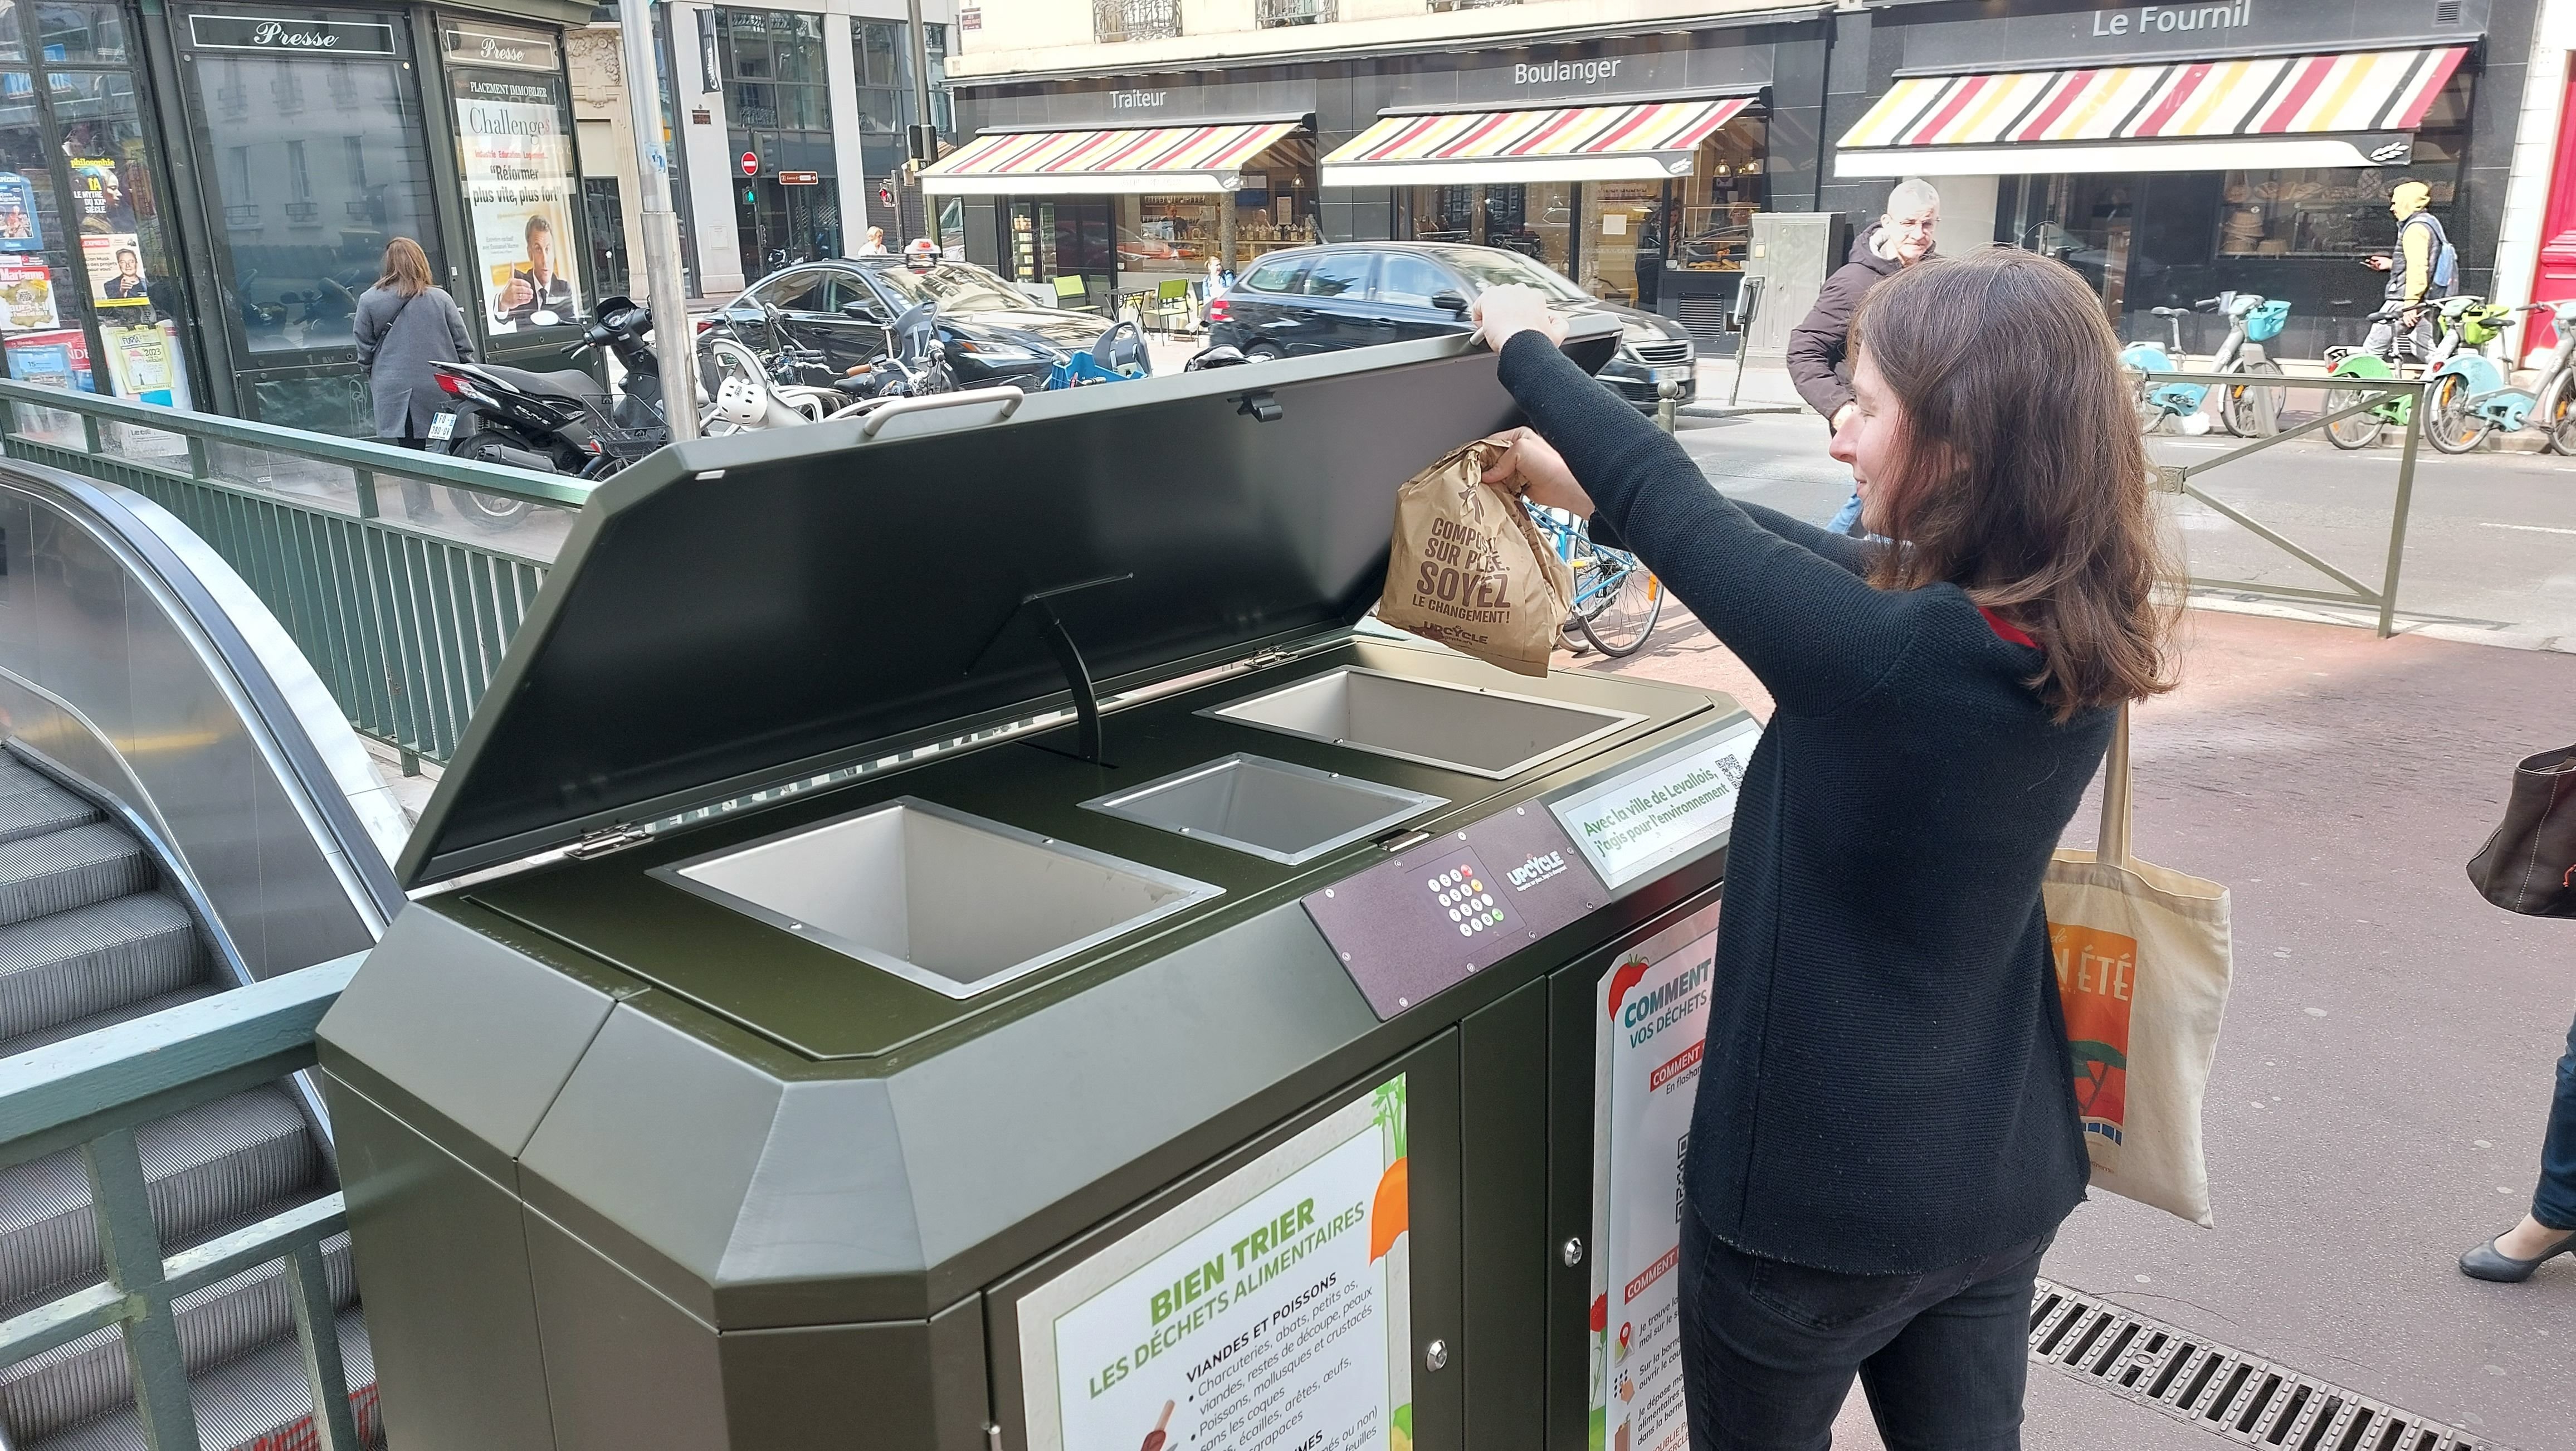 Levallois (Hauts-de-Seine), le 16 mai. La municipalité a installé trois poubelles partagées dédiées à la valorisation des déchets alimentaires. Une expérimentation avant l'entrée en vigueur de l'obligation de tri au 1er janvier 2024. LP/A.-S.D.